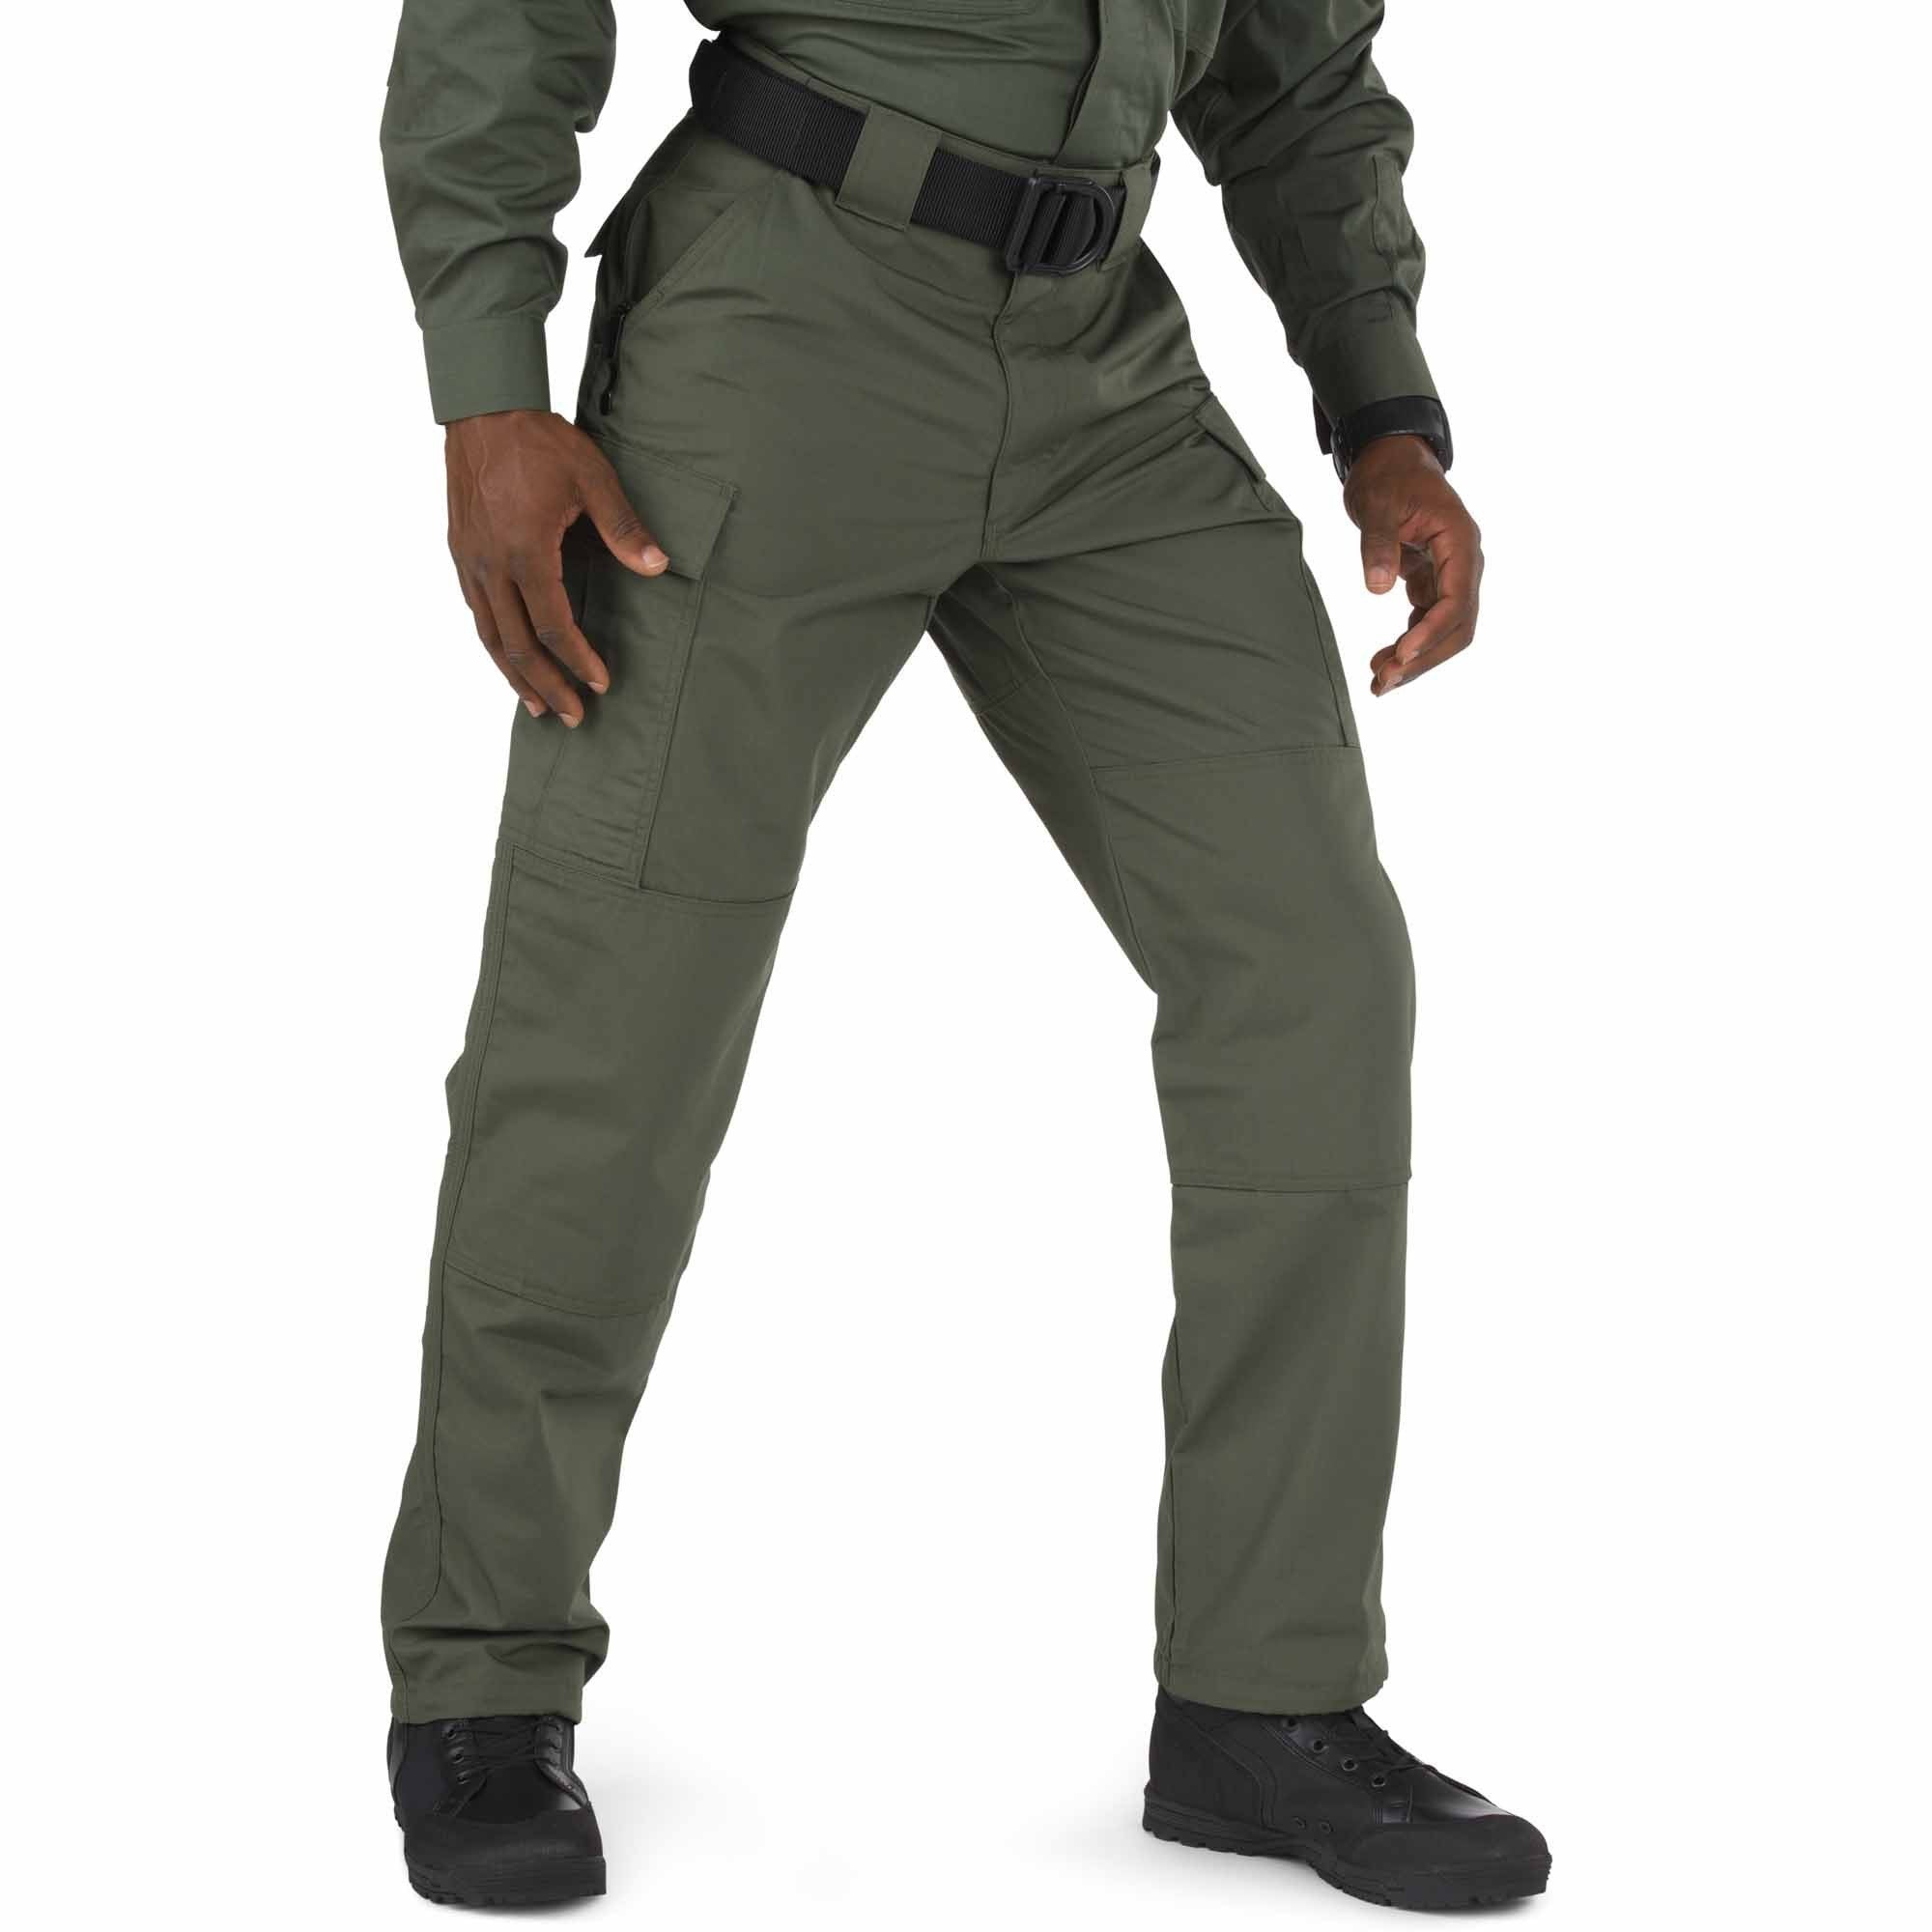 5.11 Tactical TDU Pants Pants 5.11 Tactical TDU Green Extra Small • Short Tactical Gear Supplier Tactical Distributors Australia